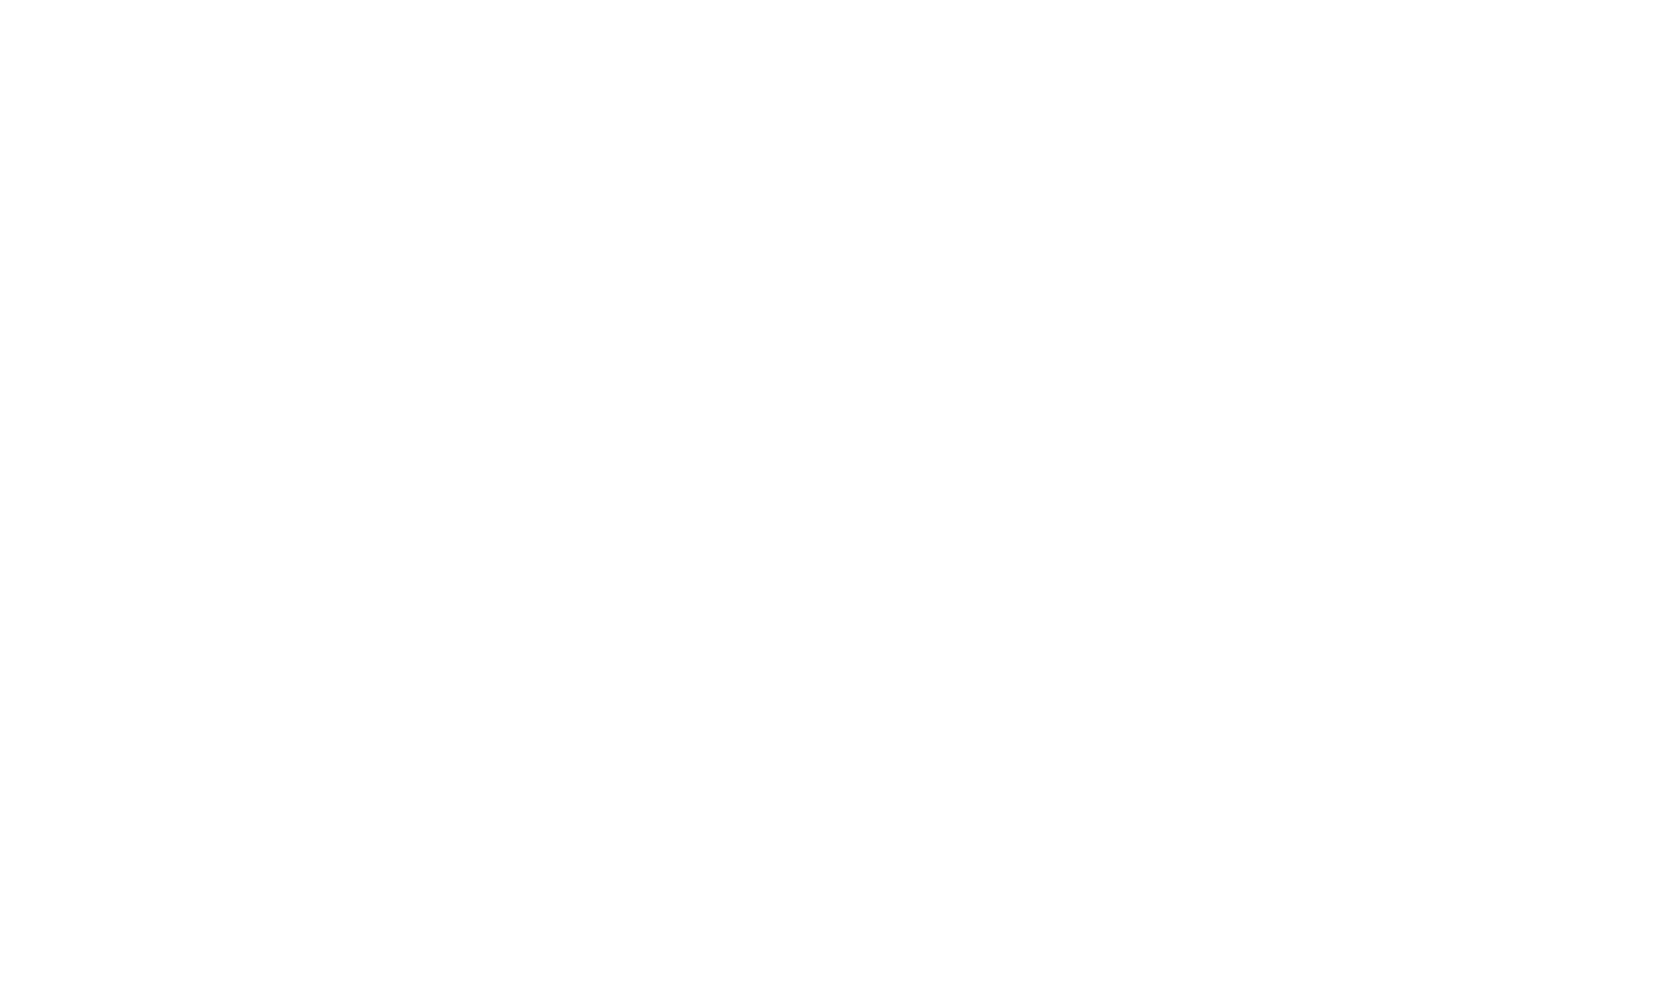 Дудергоф. Пристань. 1910–1914 гг. Источник: материалы сайта PastVu https://pastvu.com/p/329792 